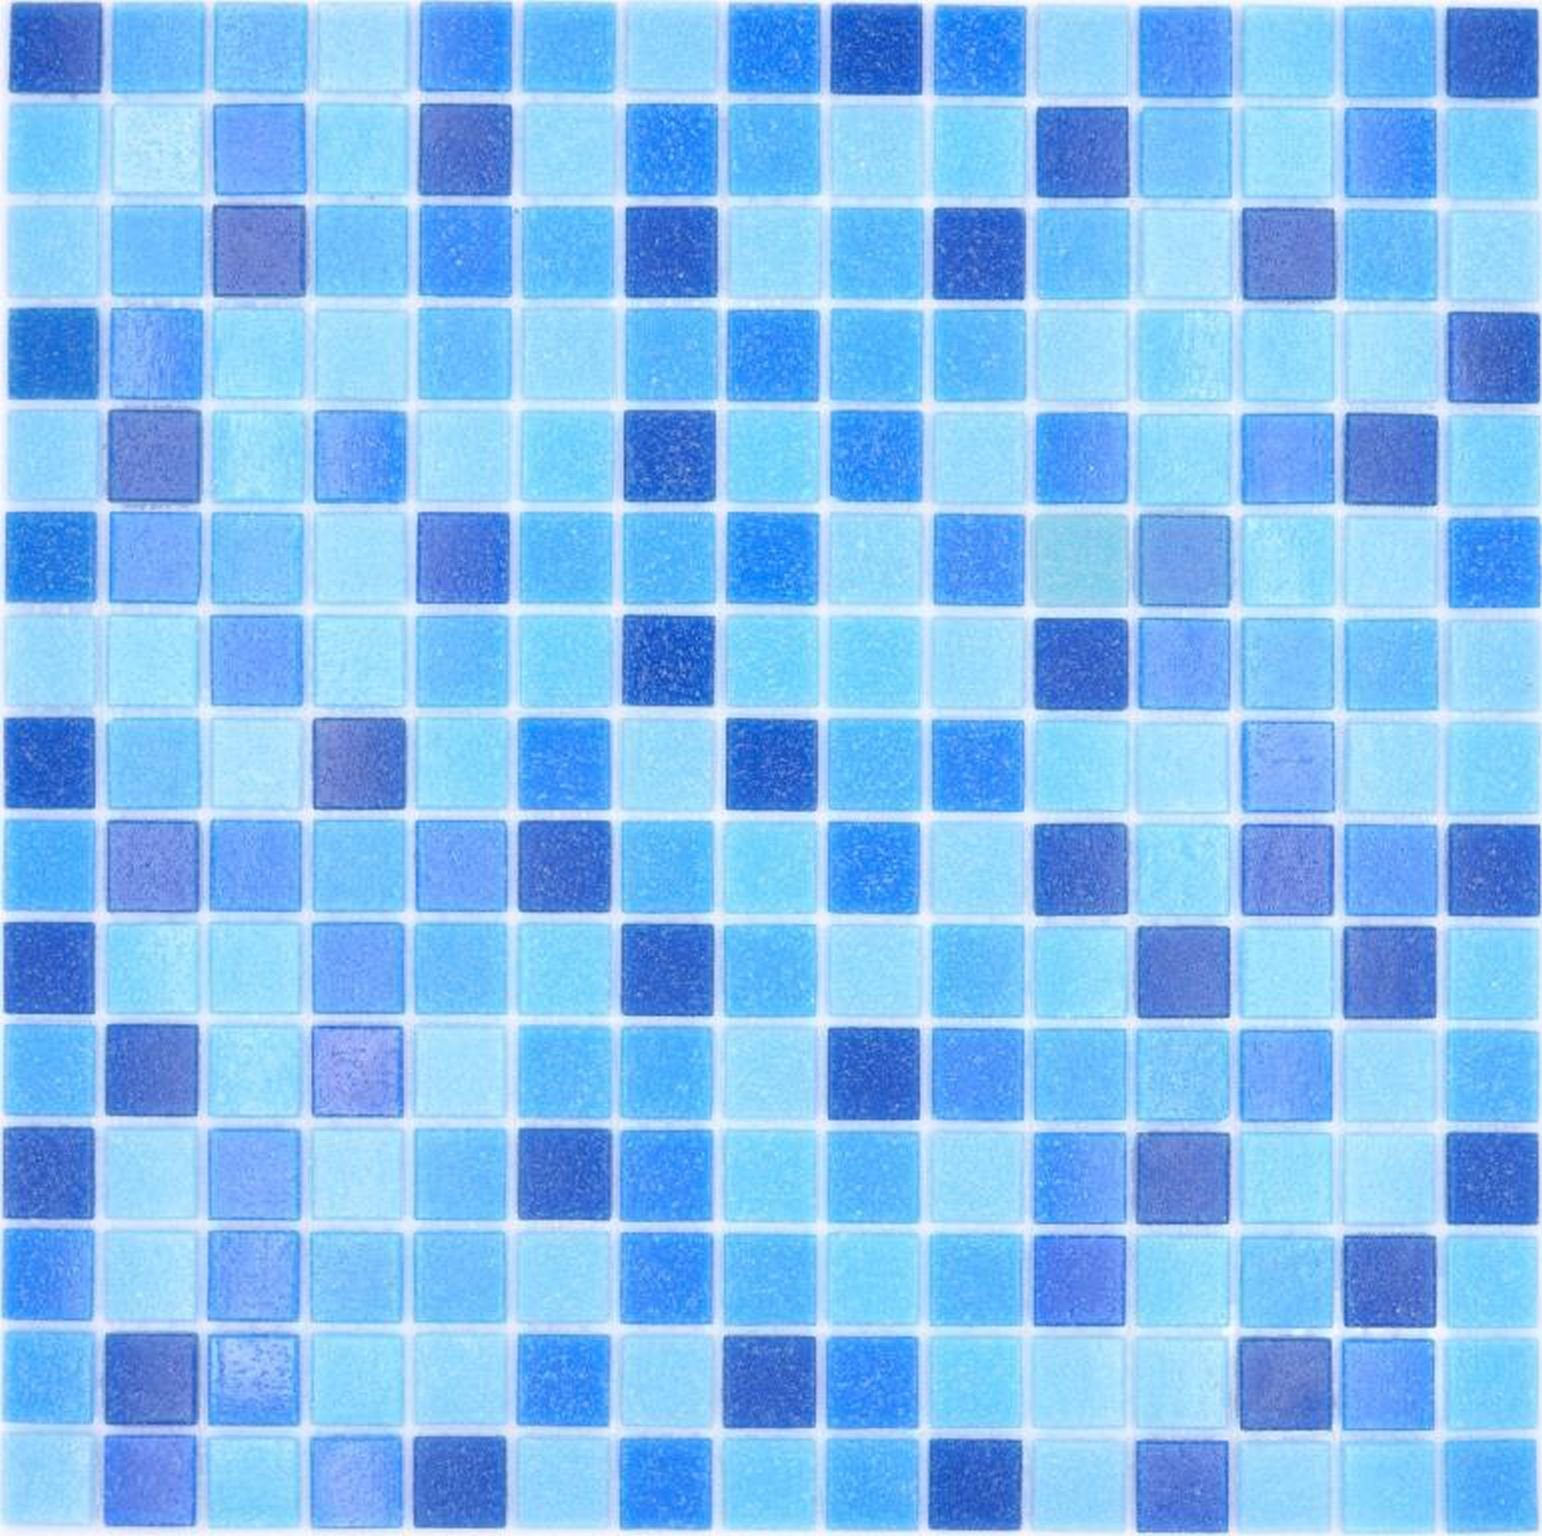 Mosani Bodenfliese Glasmosaik Mosaikfliesen blau Poolmosaik